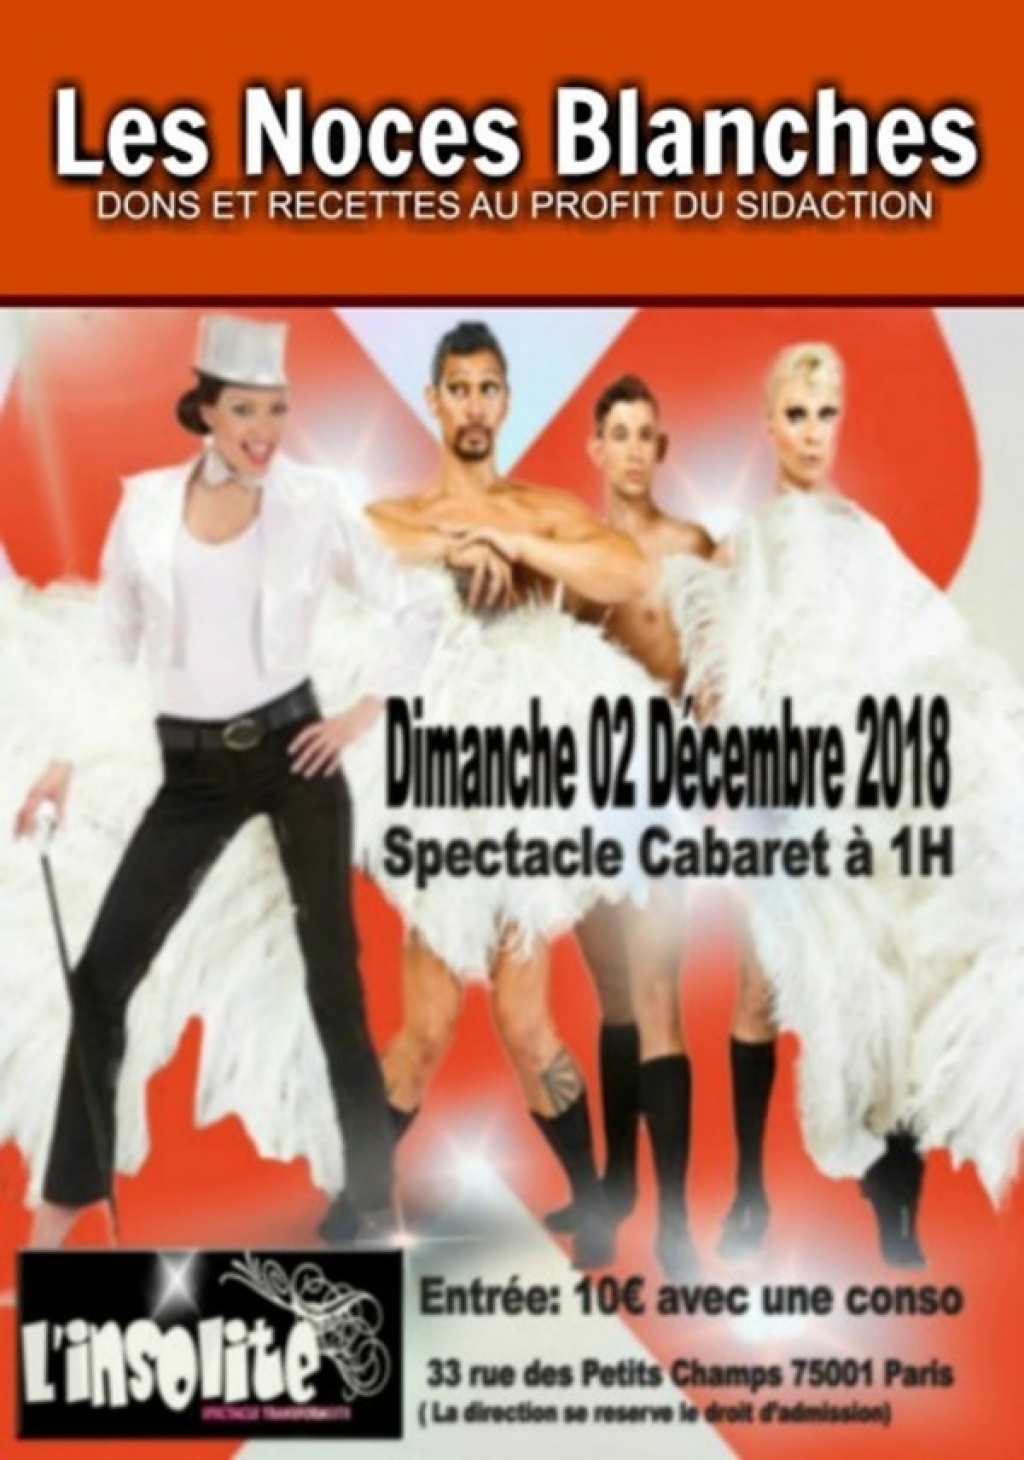 Les Noces Blanches - Sidaction 2018 - Soirée Cabaret